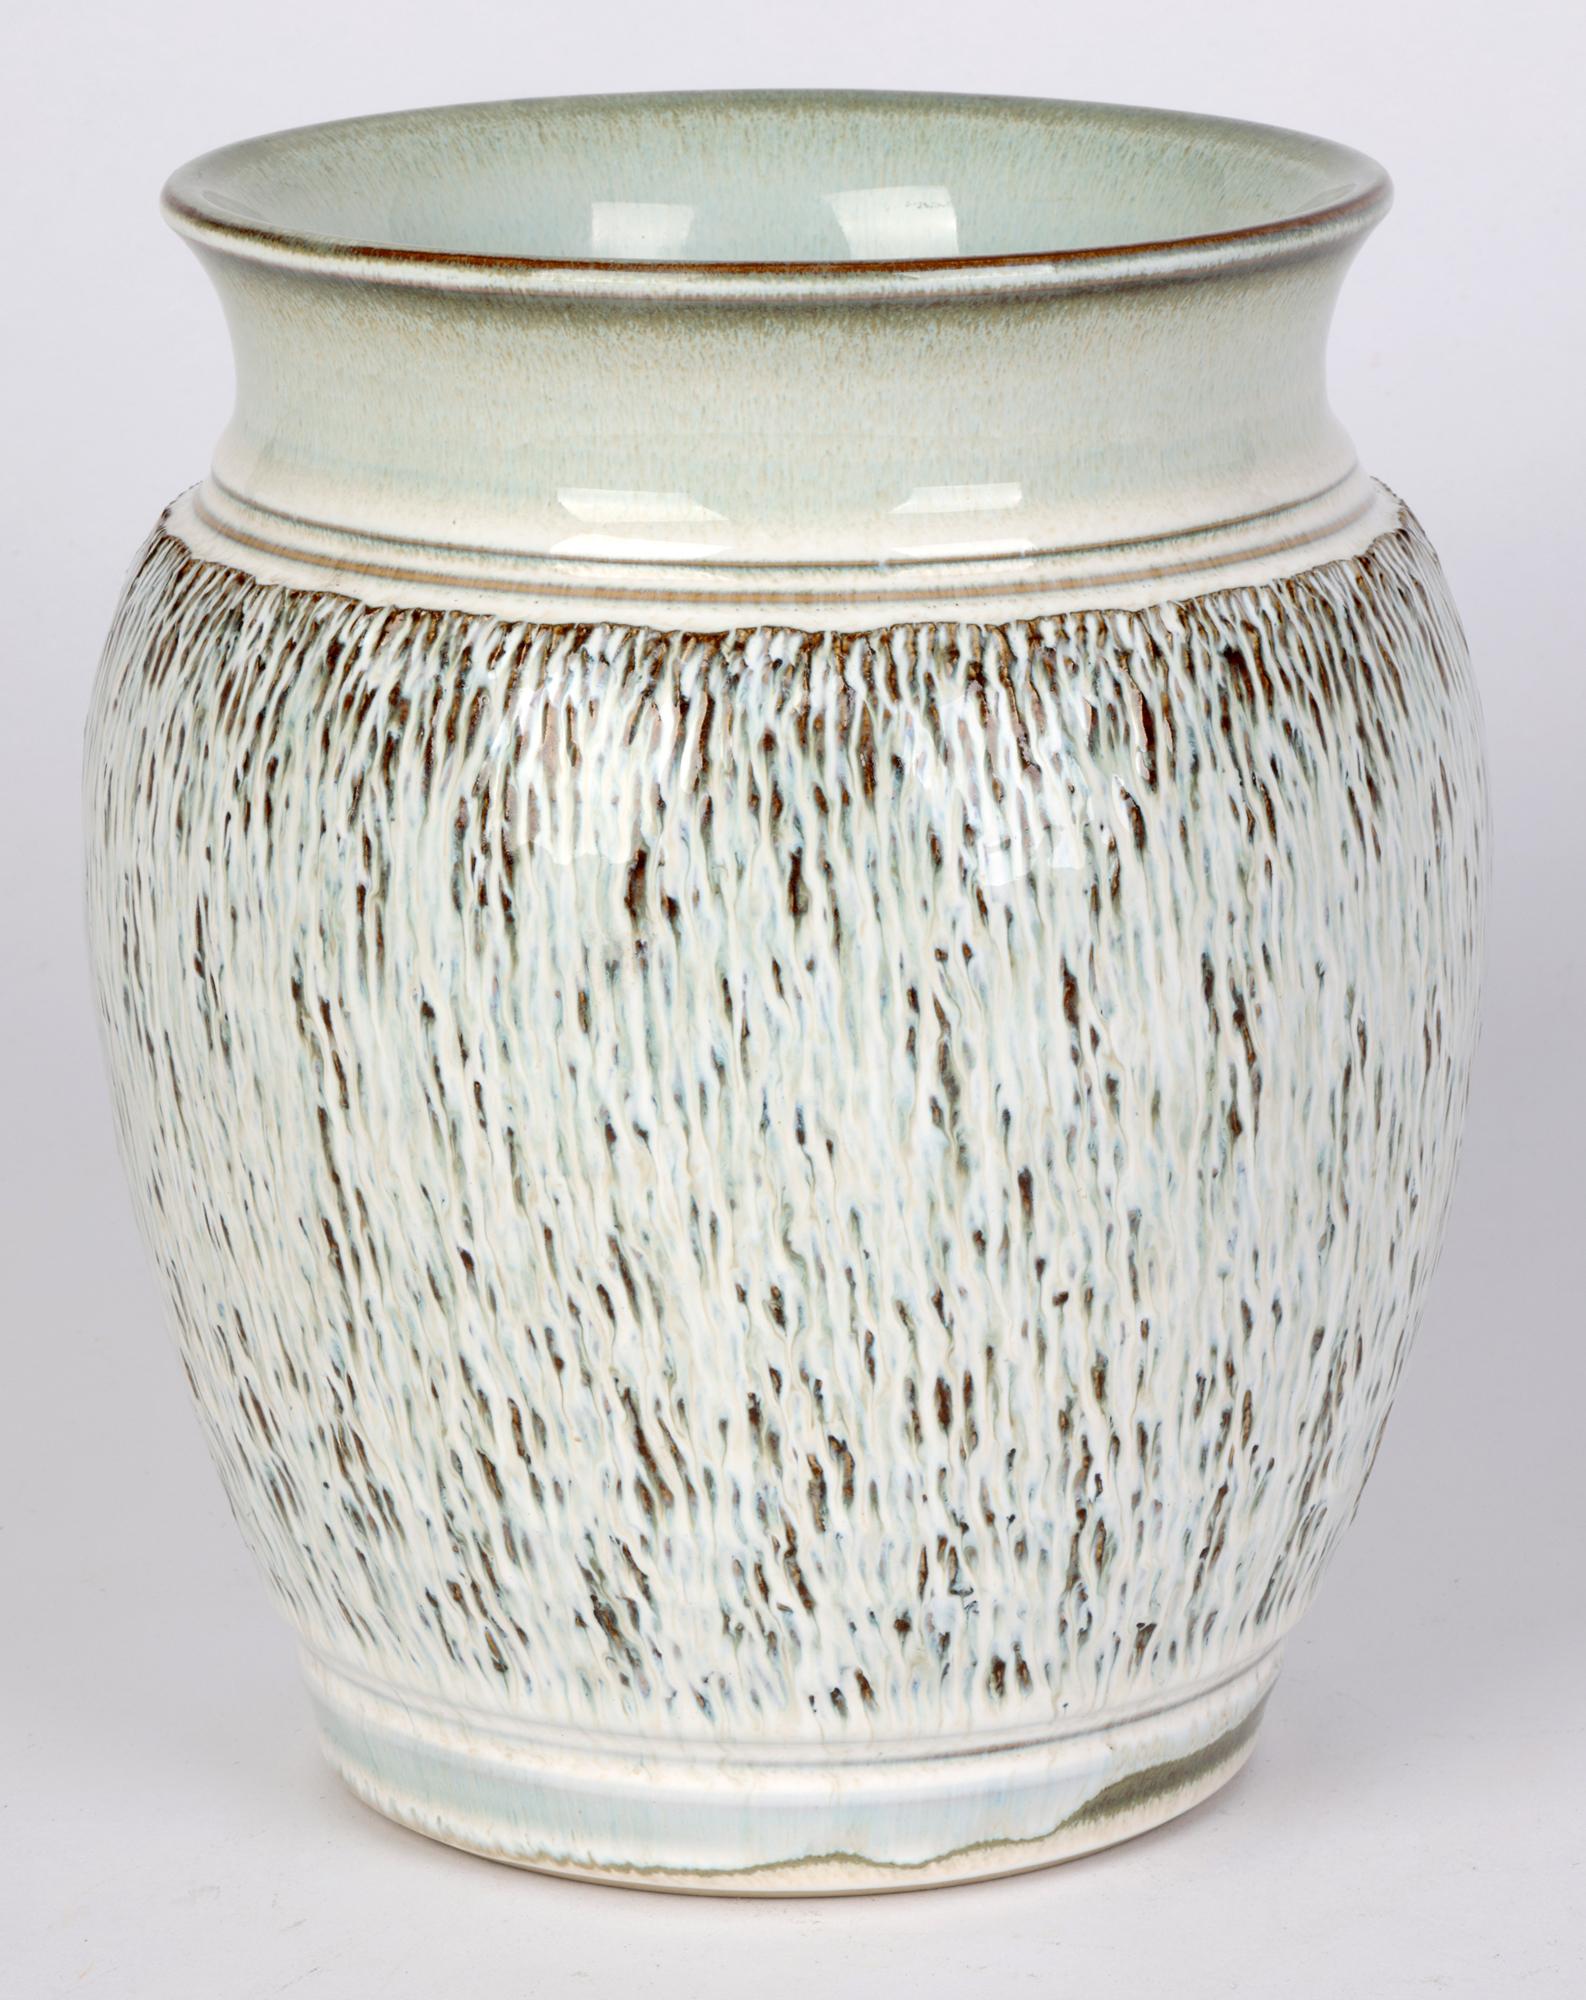 Bauhaus Inspired German Stoneware Vase   In Good Condition For Sale In Bishop's Stortford, Hertfordshire